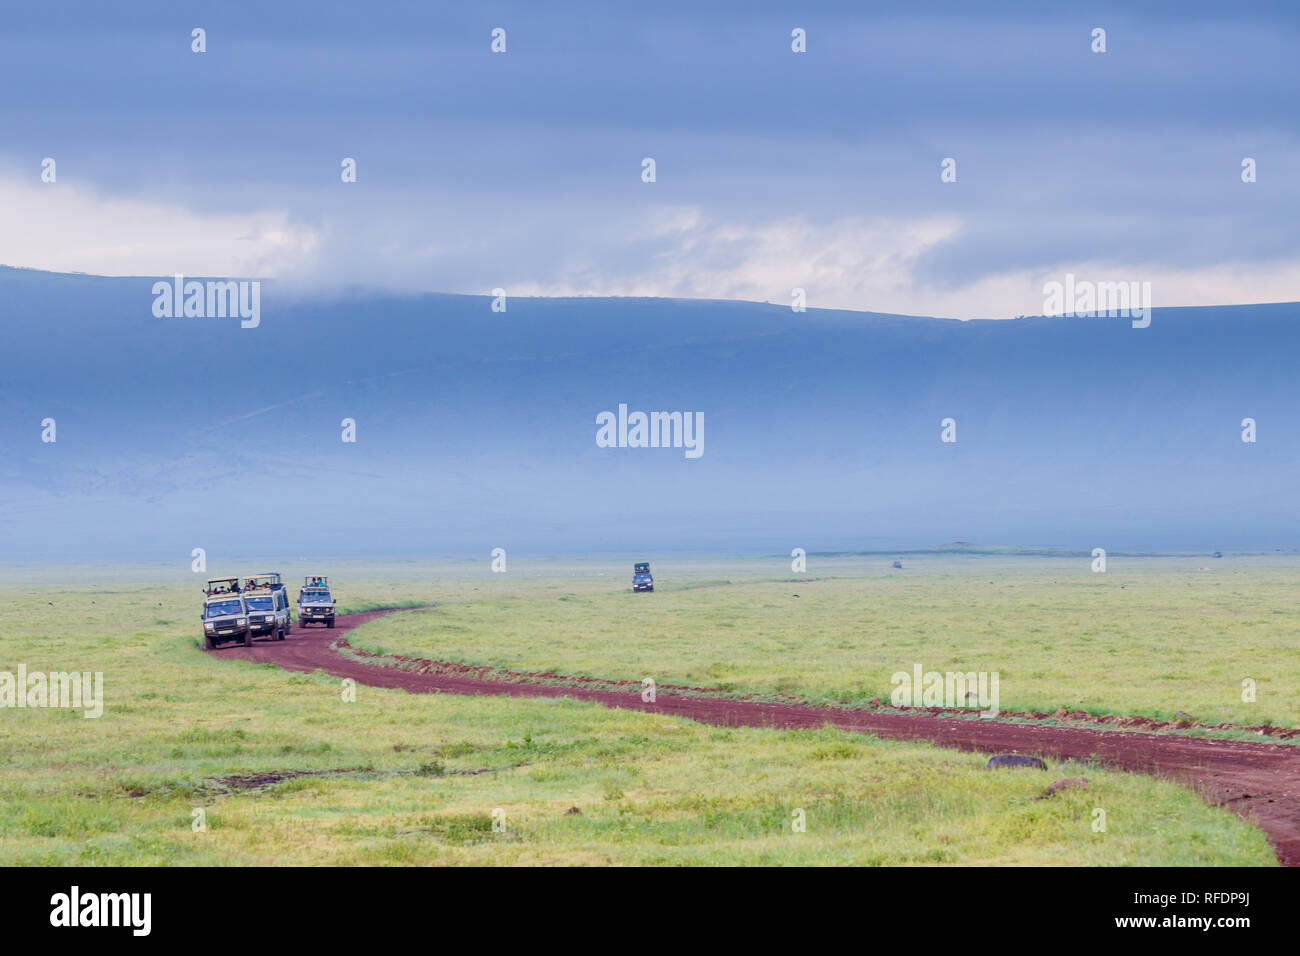 Il cratere di Ngorongoro, antica caldera vulcanica e uno dell'Africa la maggior parte delle magnifiche aree faunistiche, fa parte della riserva naturale di Ngorongoro, Tanzania Foto Stock